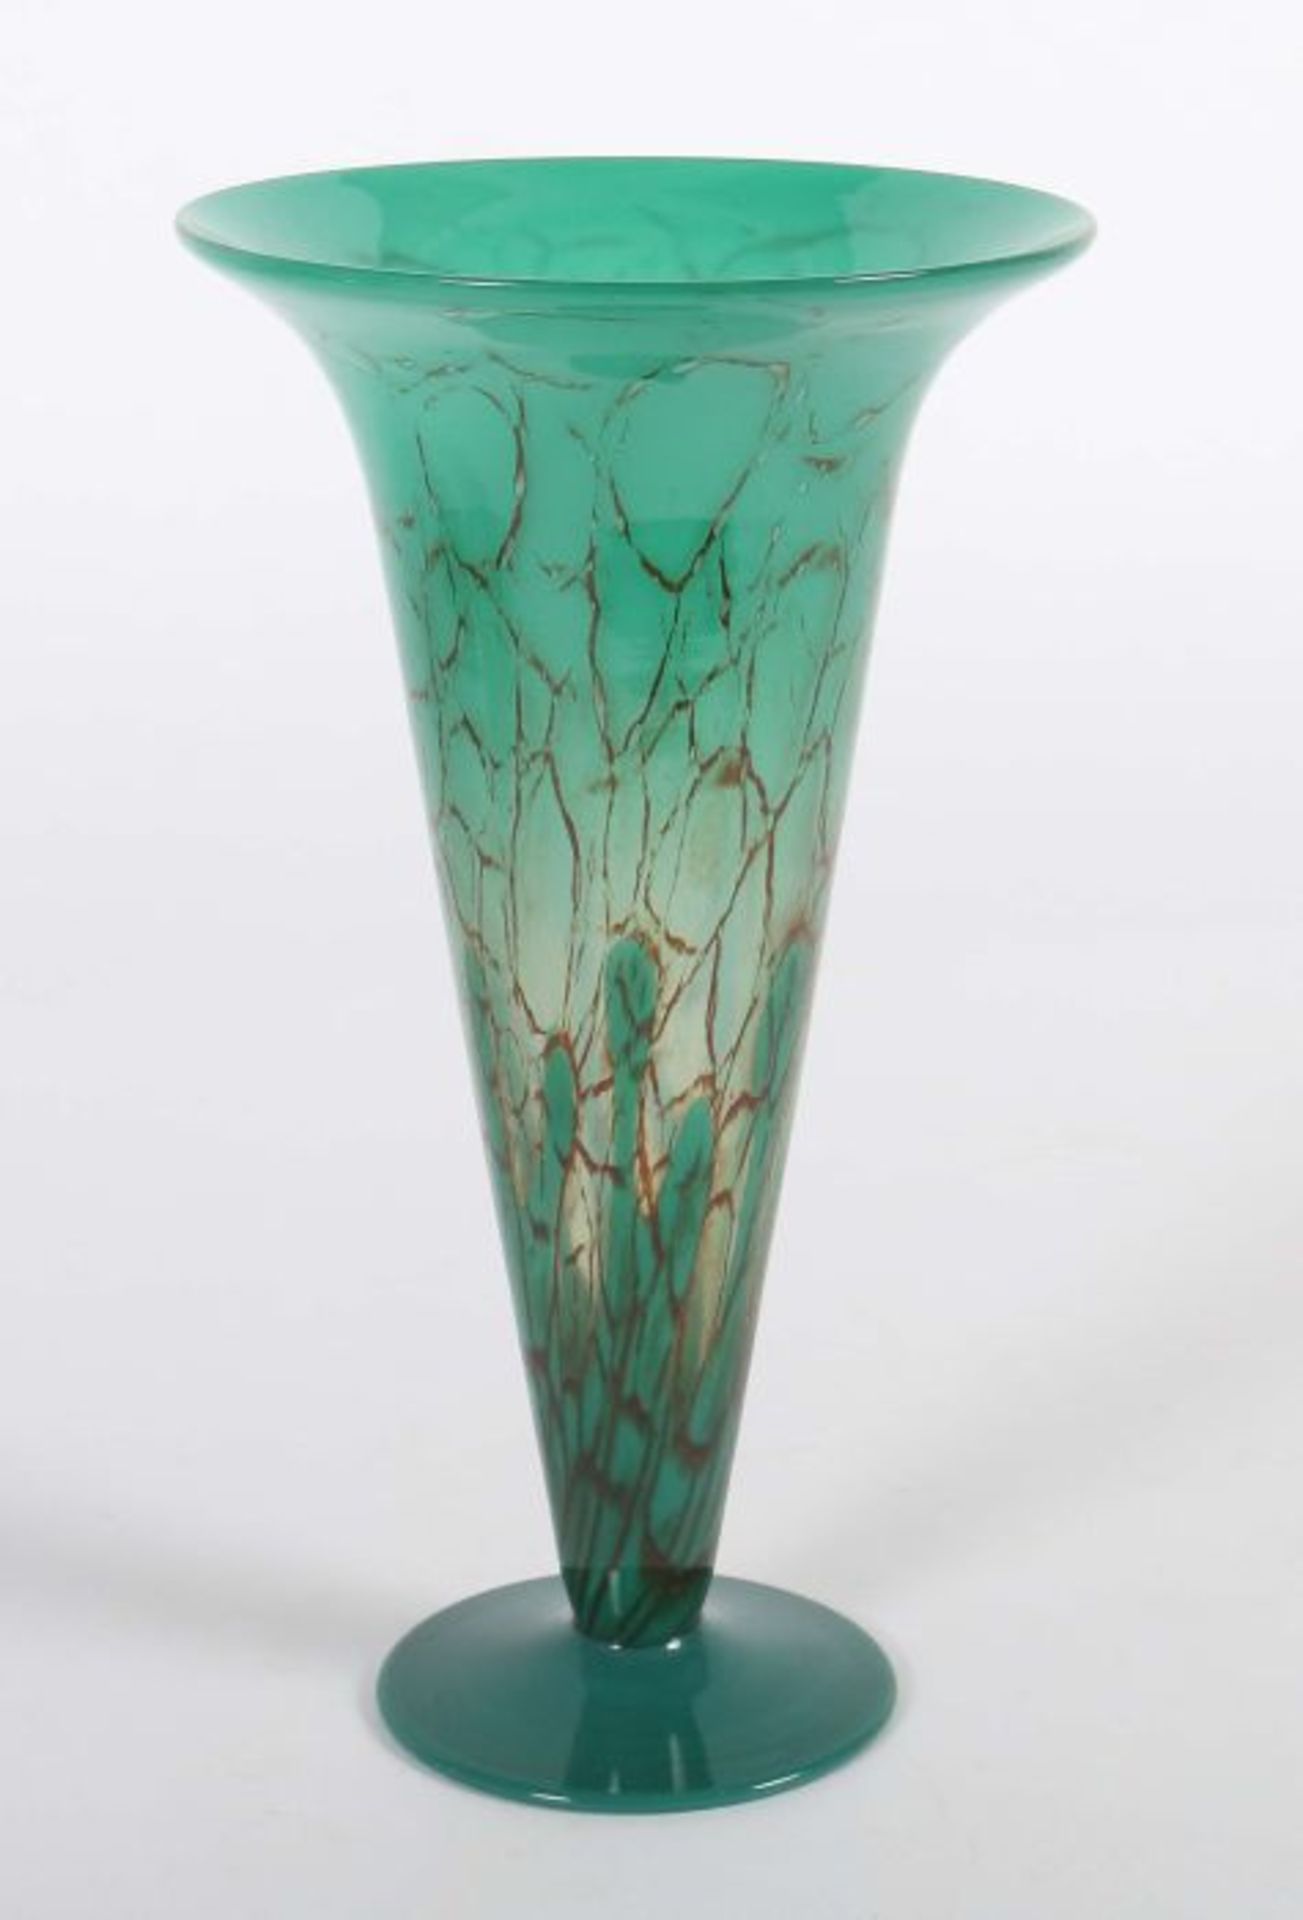 Hohe Ikora-TrichtervaseWMF Geislingen, 1930er Jahre, farbloses Kristallglas, mundgeblasen, - Bild 2 aus 3